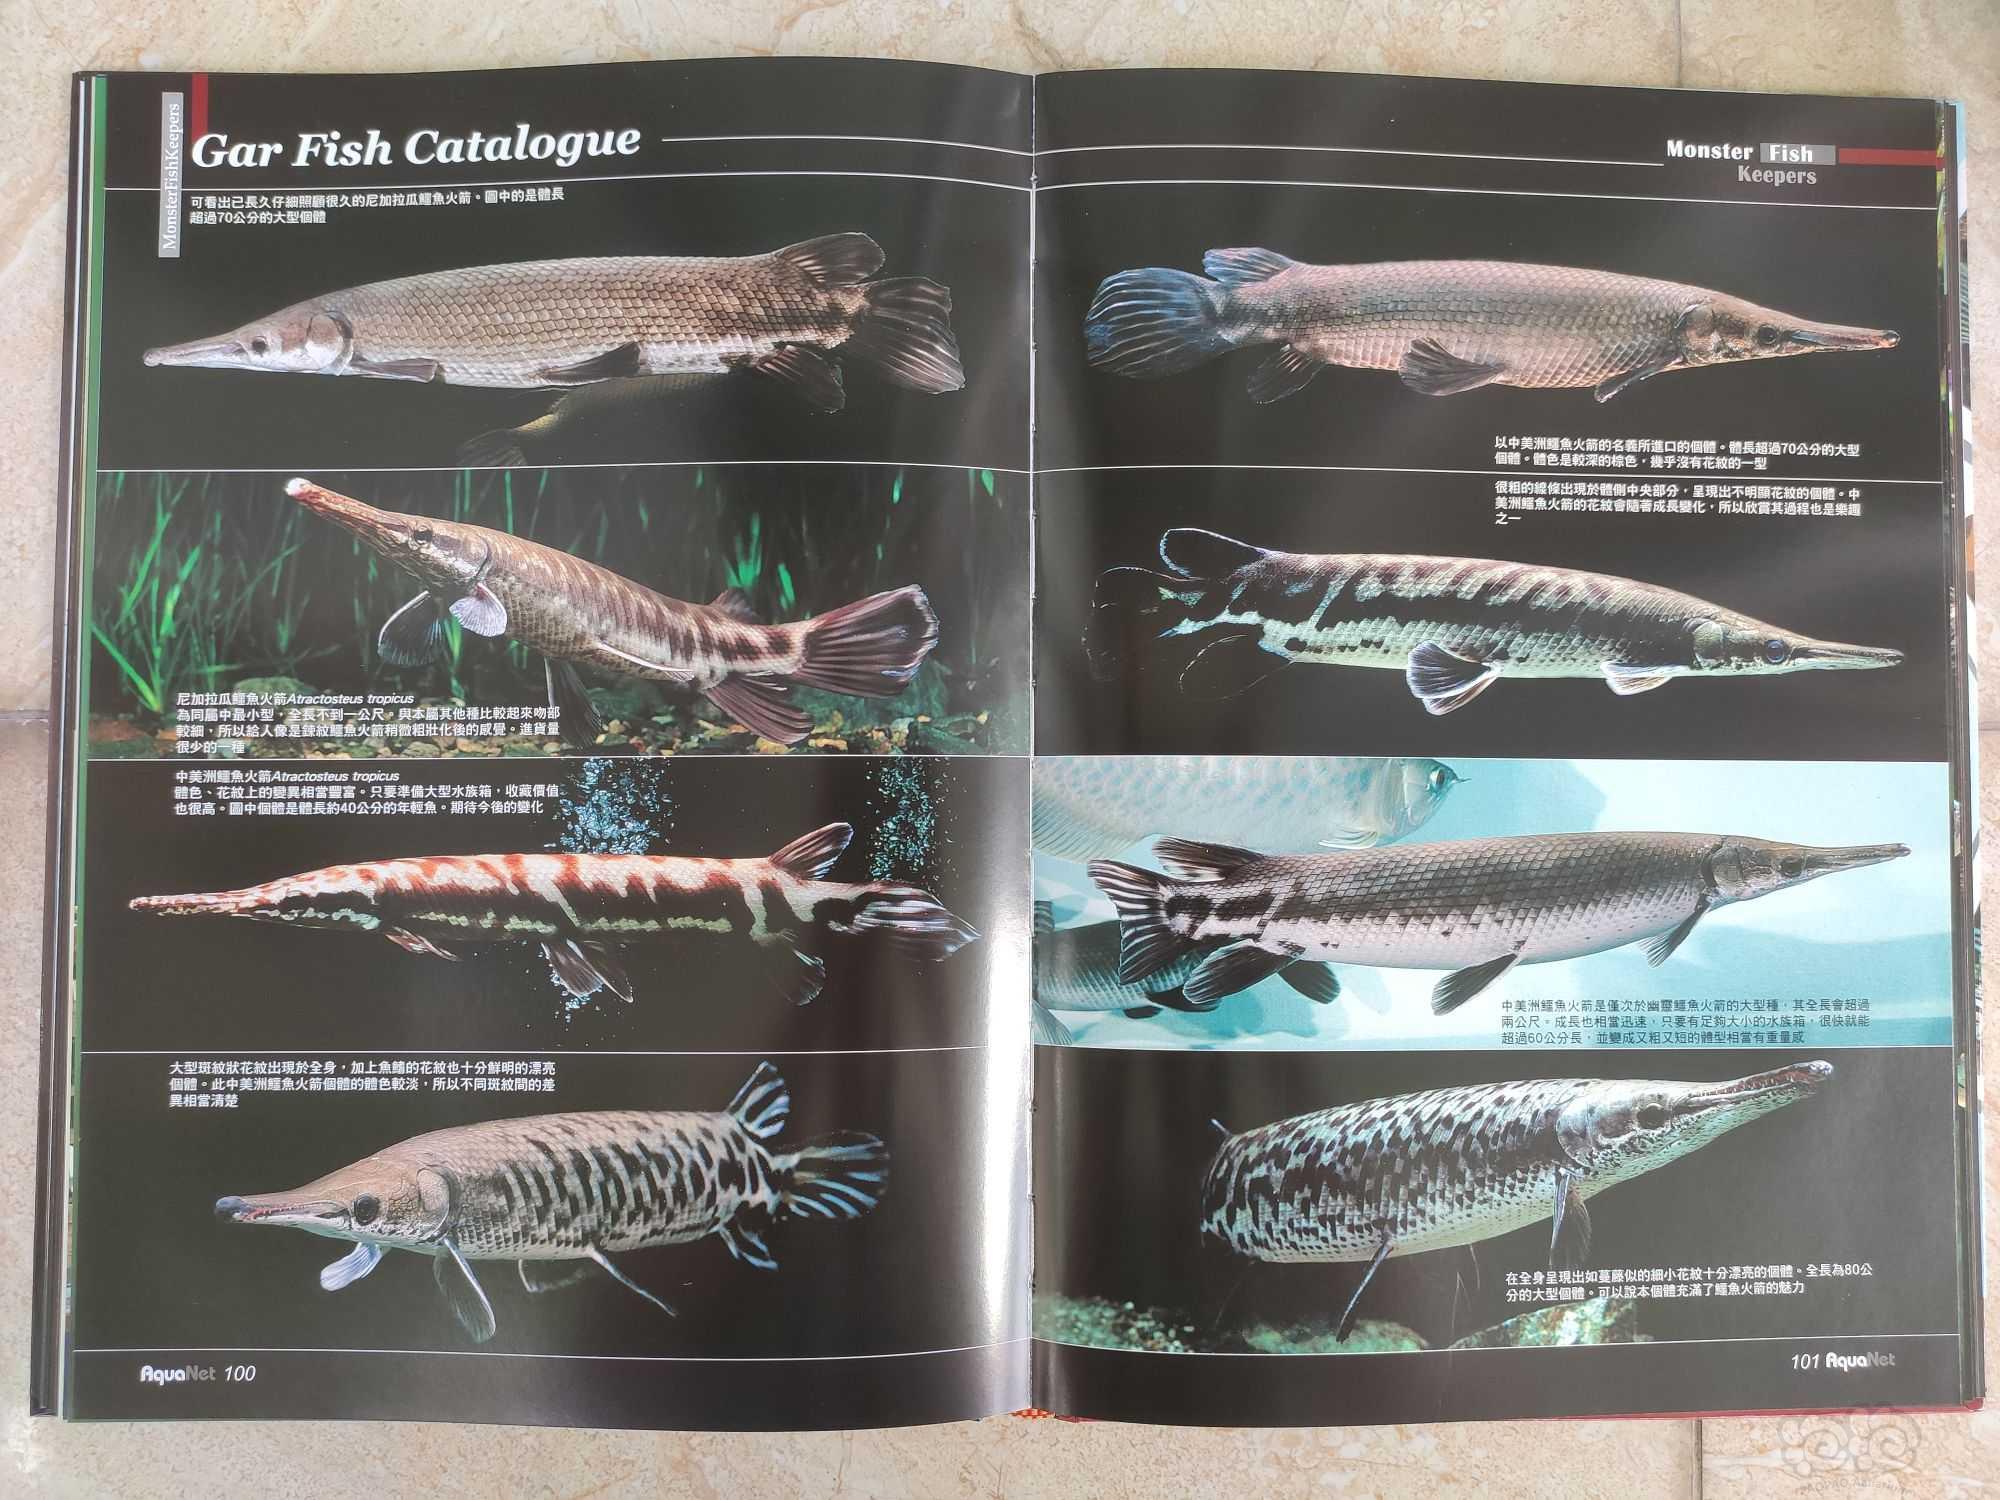 出水族书籍《魅力大型鱼》-图6